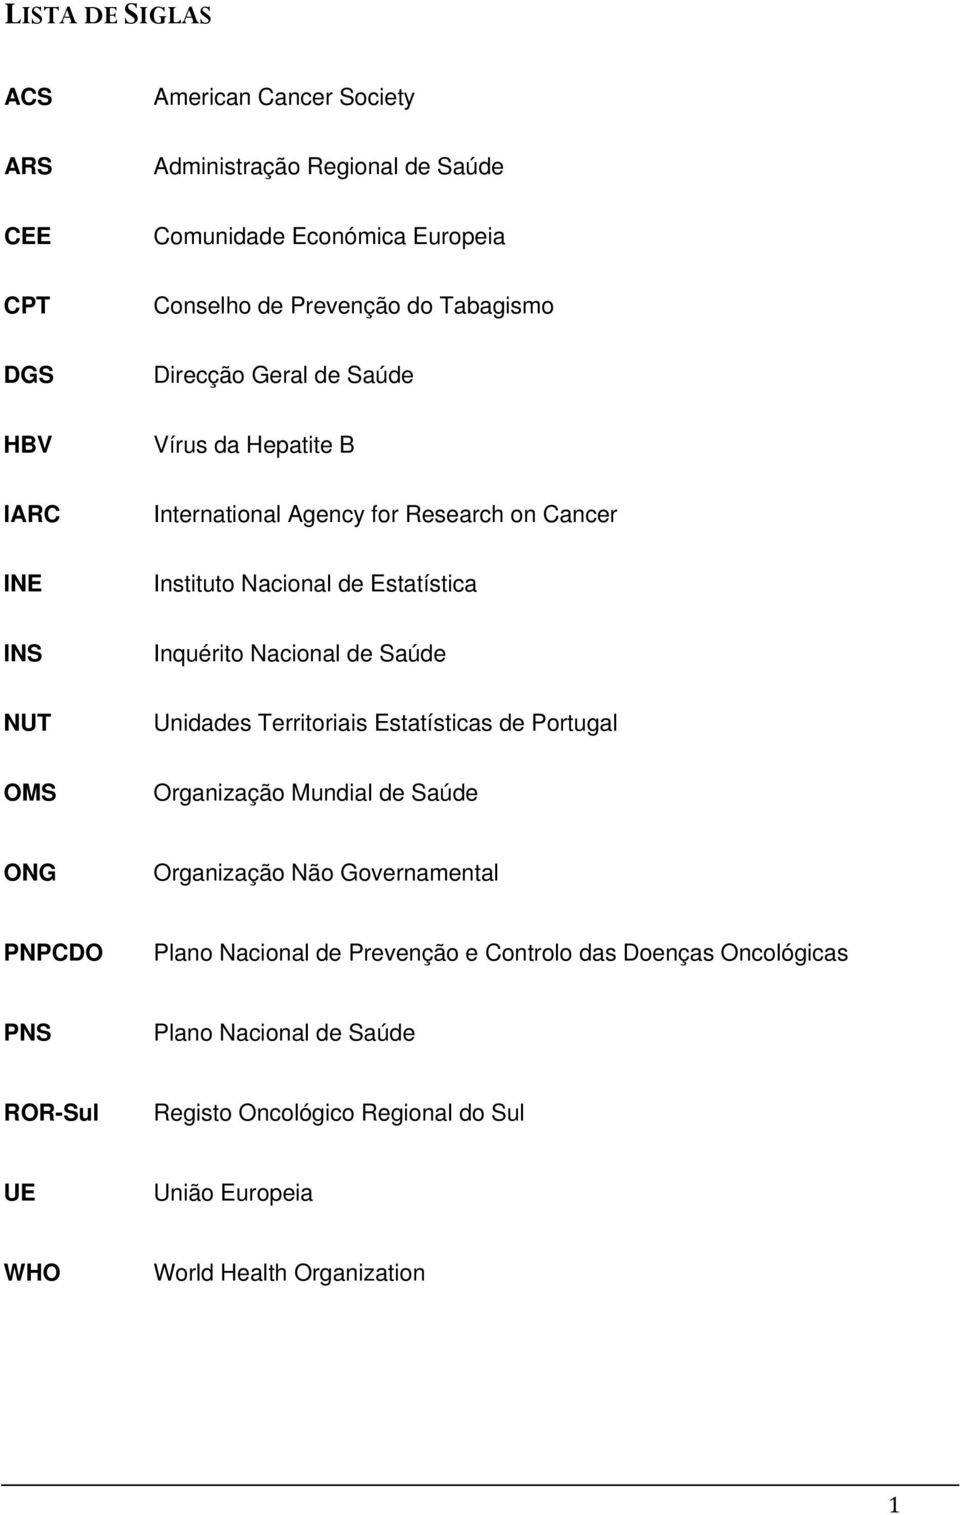 de Saúde NUT Unidades Territoriais Estatísticas de Portugal OMS Organização Mundial de Saúde ONG Organização Não Governamental PNPCDO Plano Nacional de